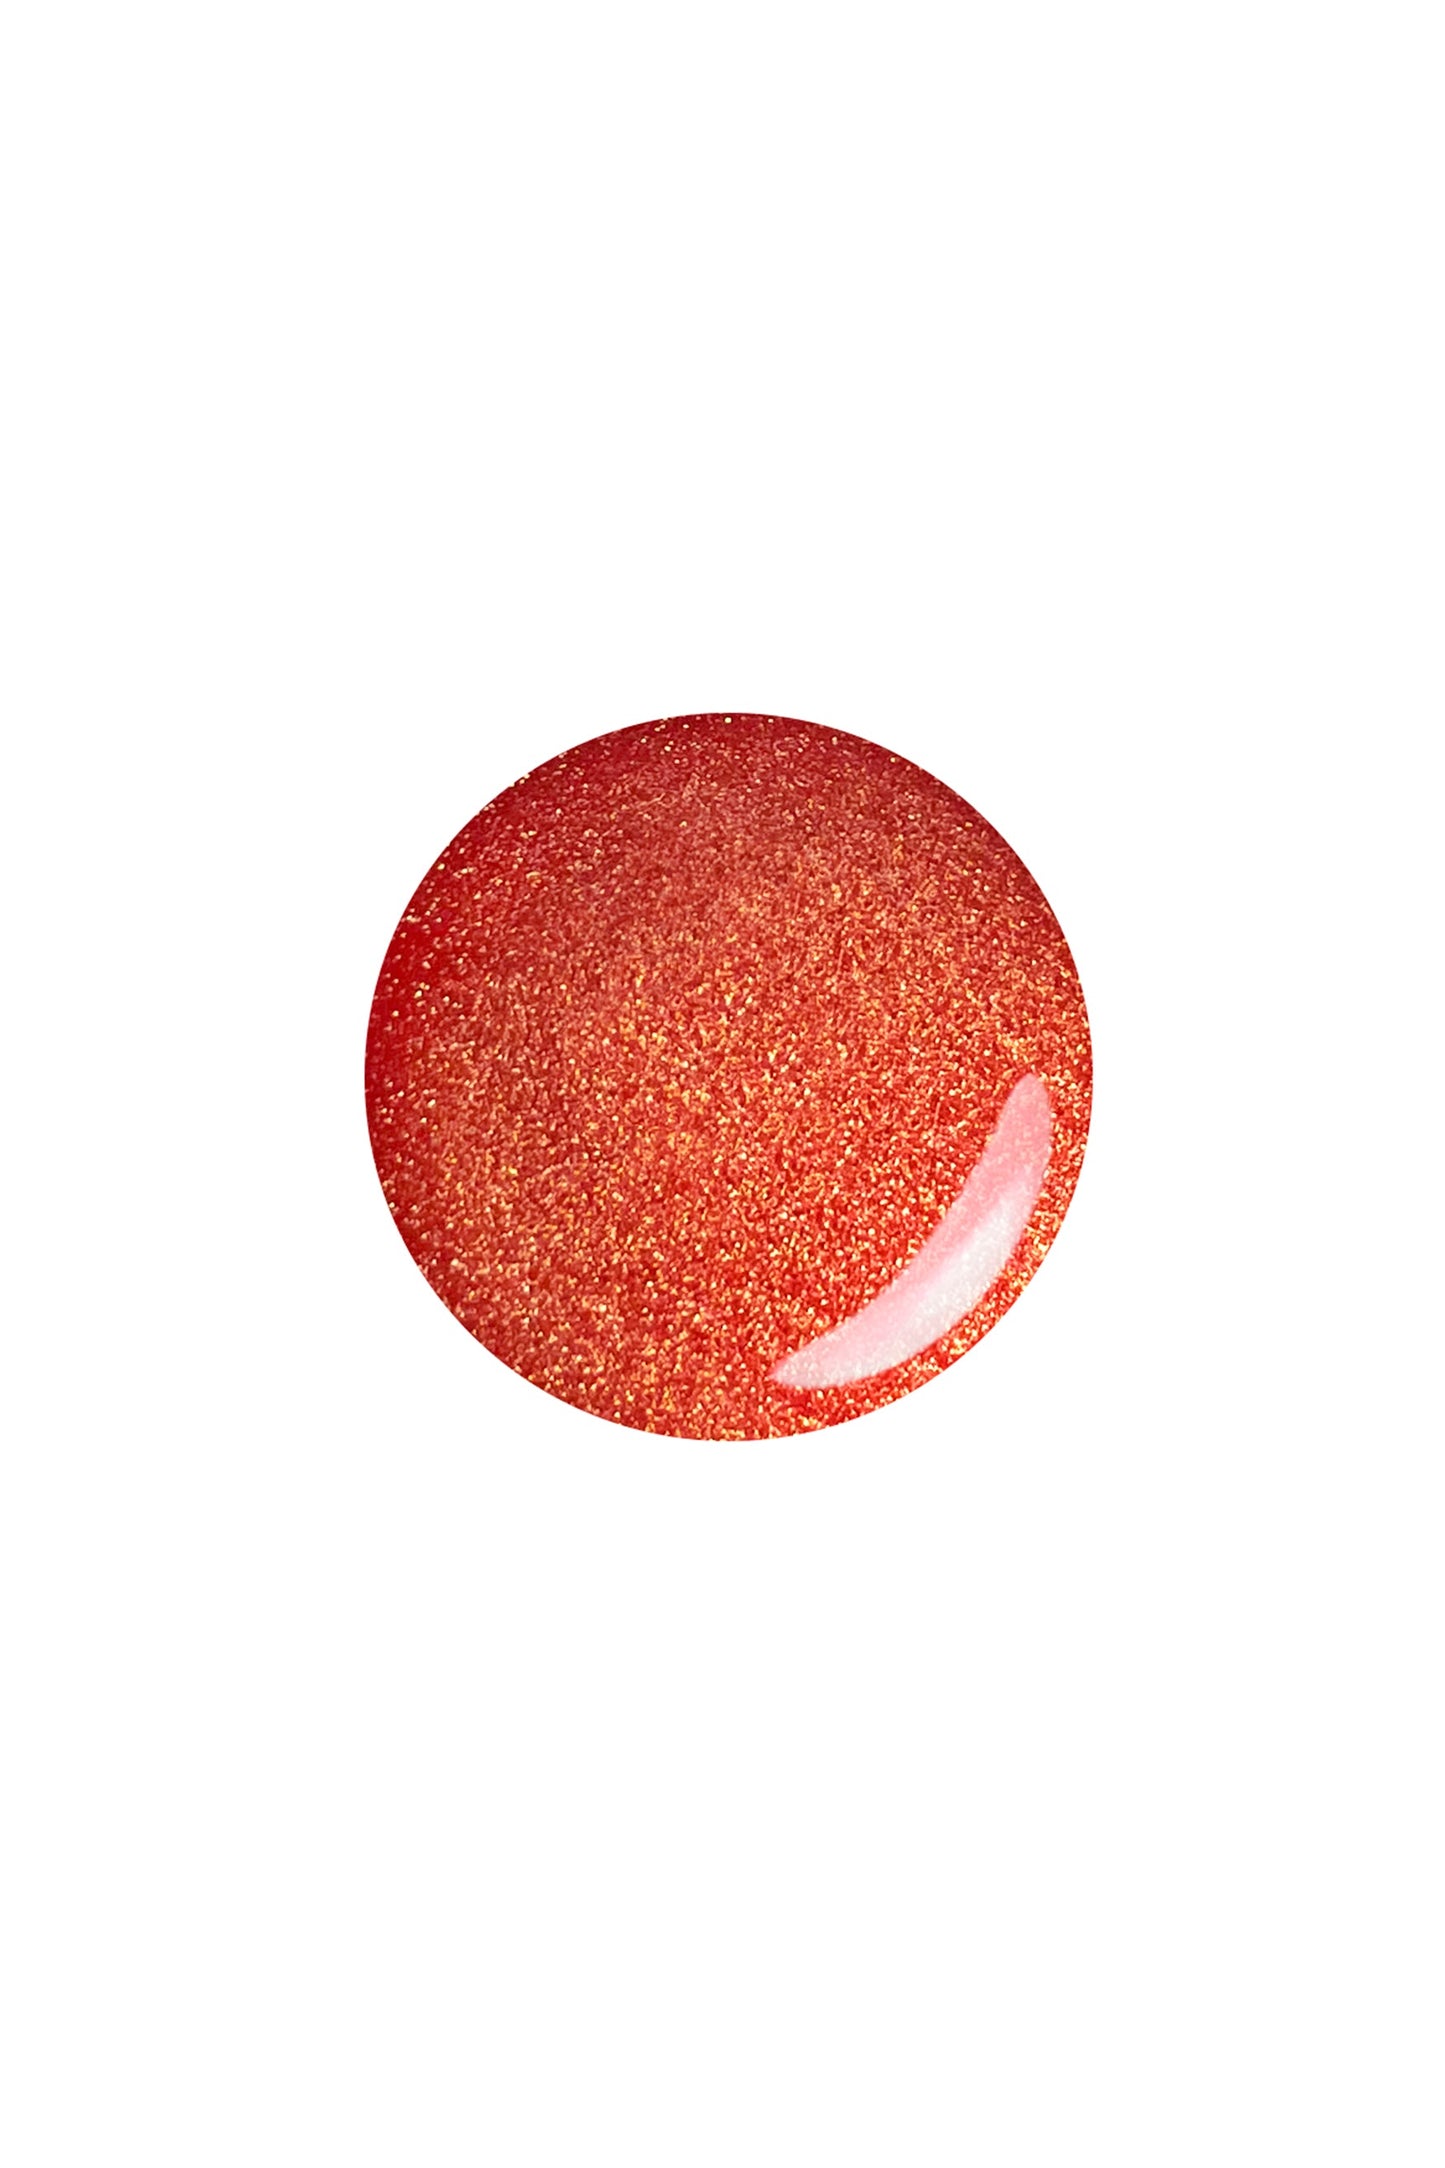 VIBRANT ORANGE: a round button sample color